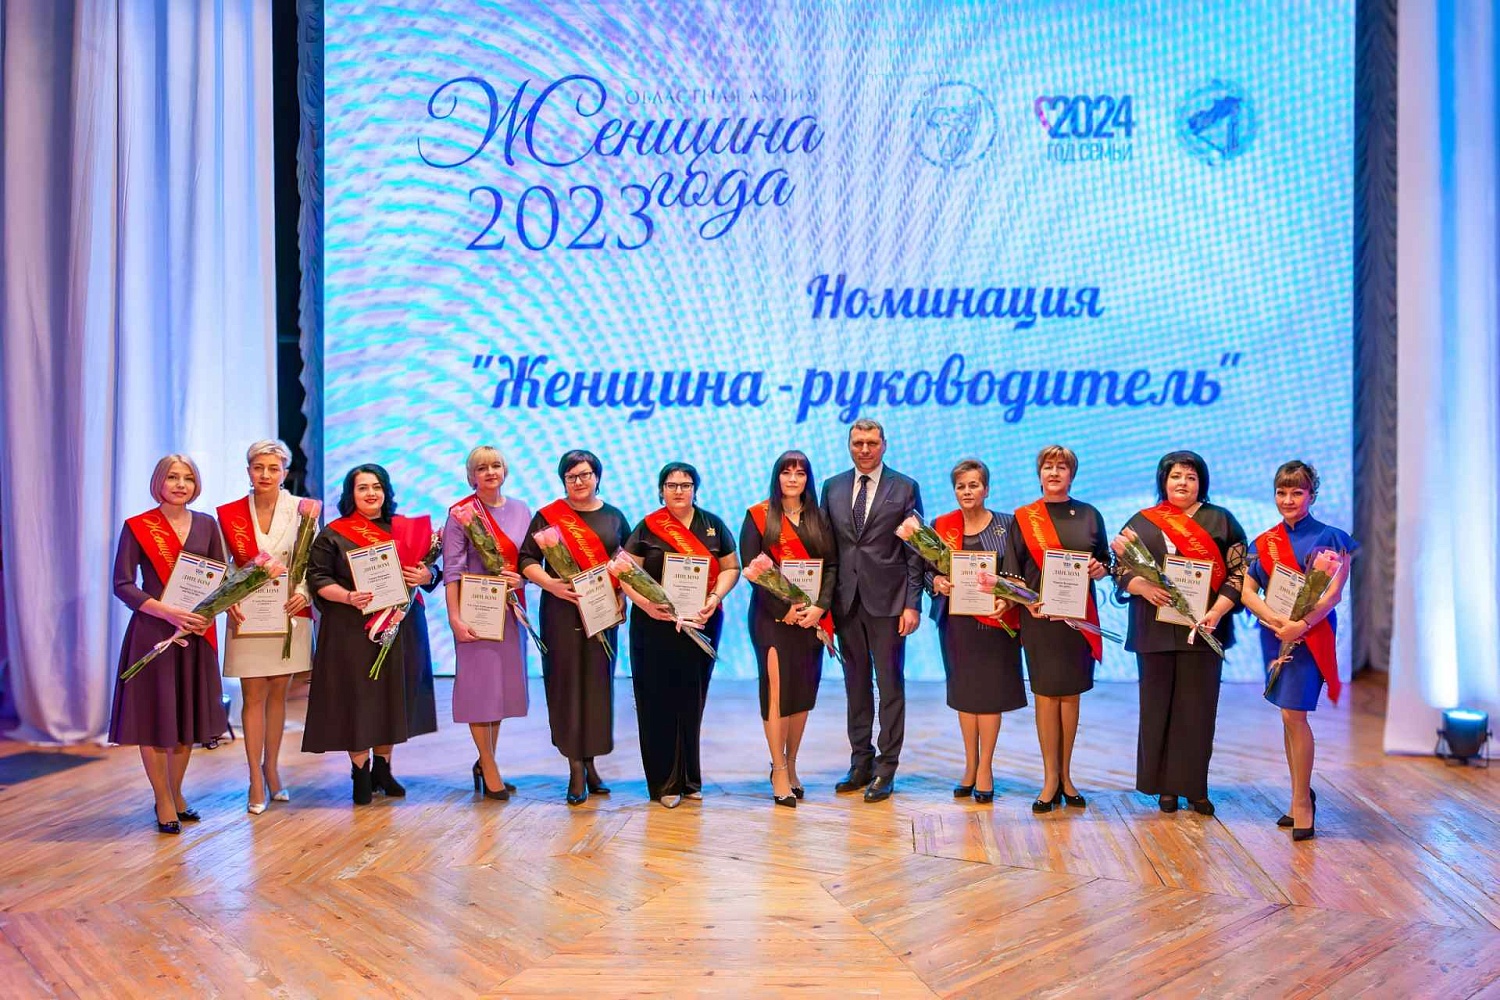 Торжественная церемония чествования победительниц областной акции "Женщина года - 2023"